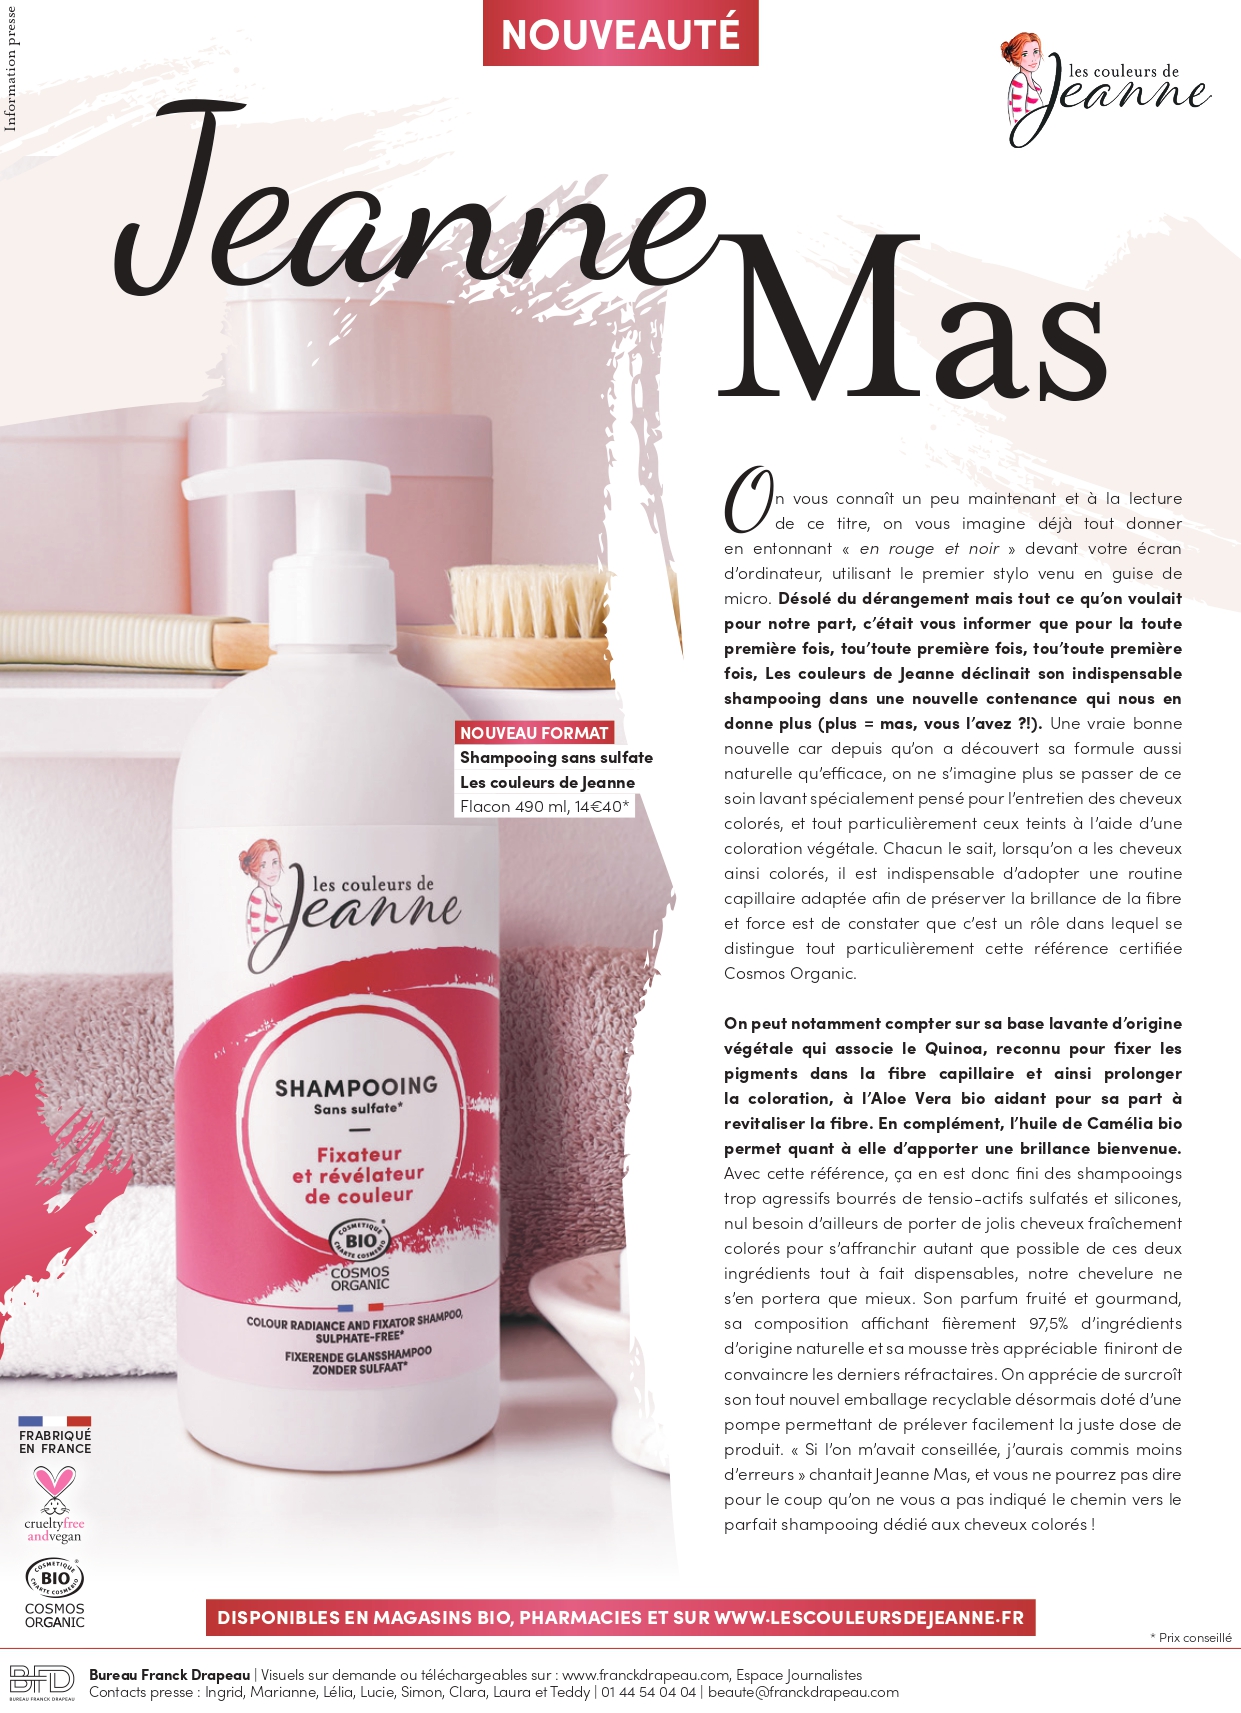 Les Couleurs De Jeanne | Shampooing Grand Format